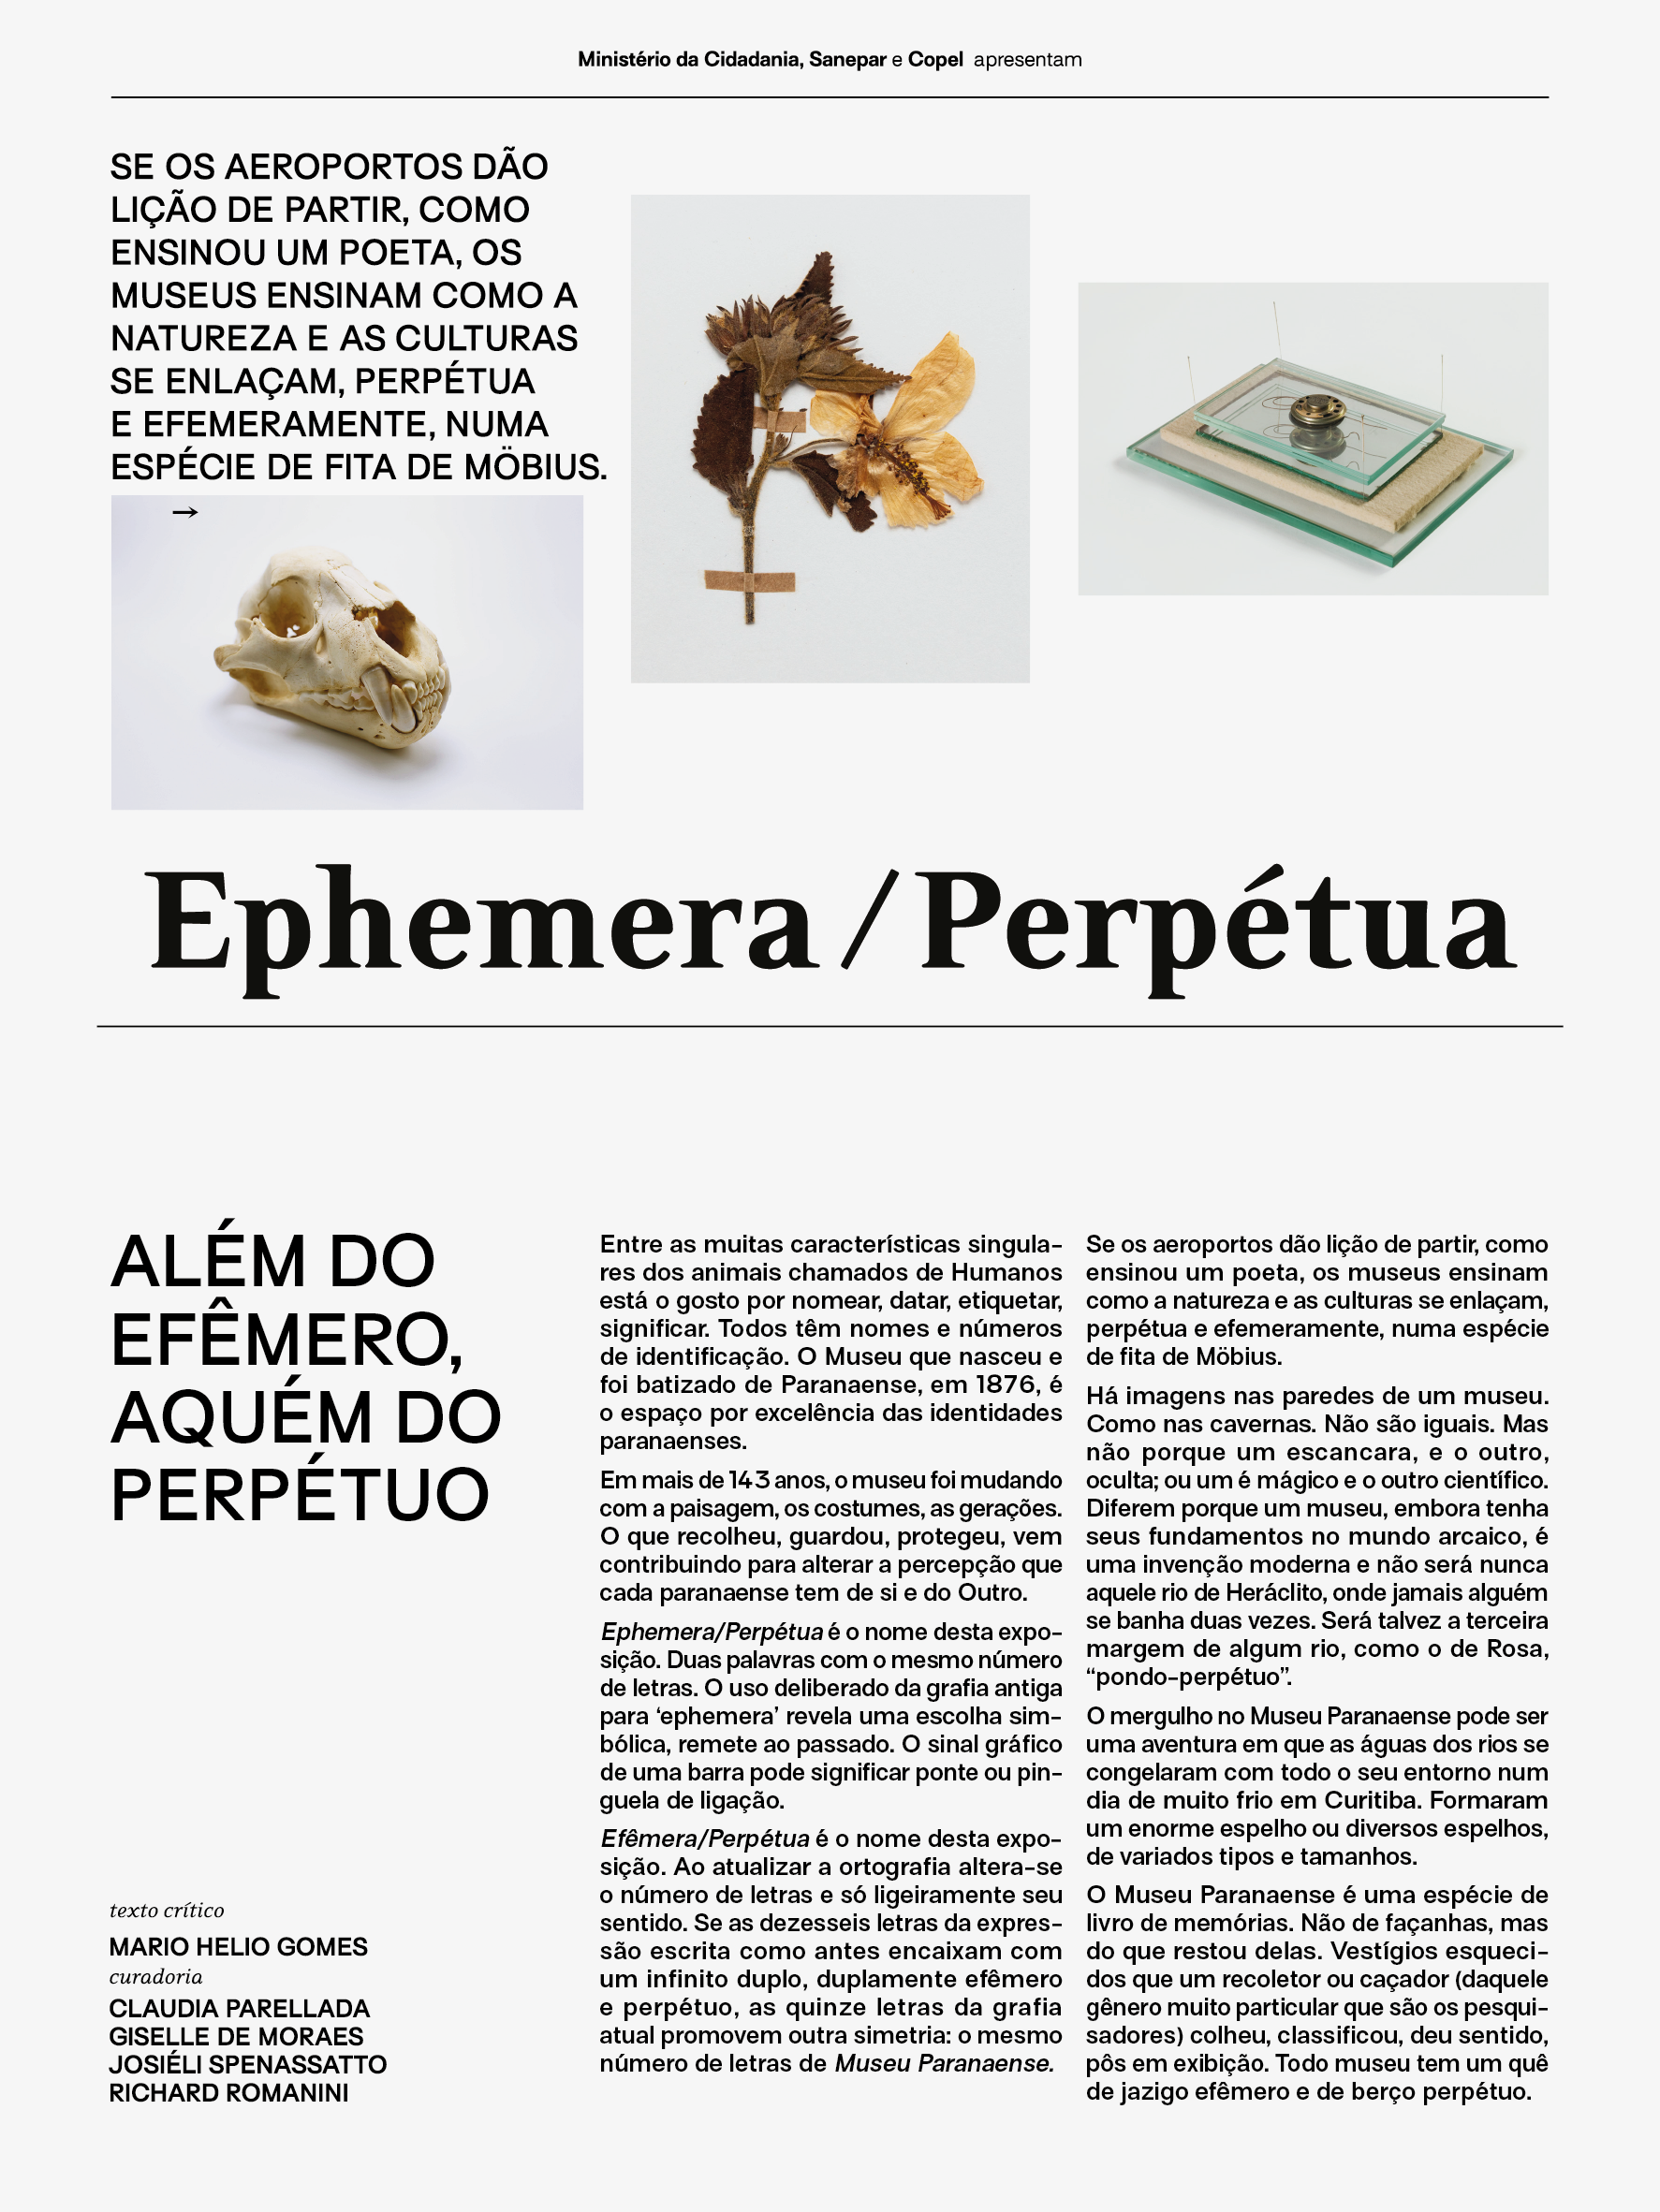 Capa do jornal da exposição "Ephemera/Perpétua"